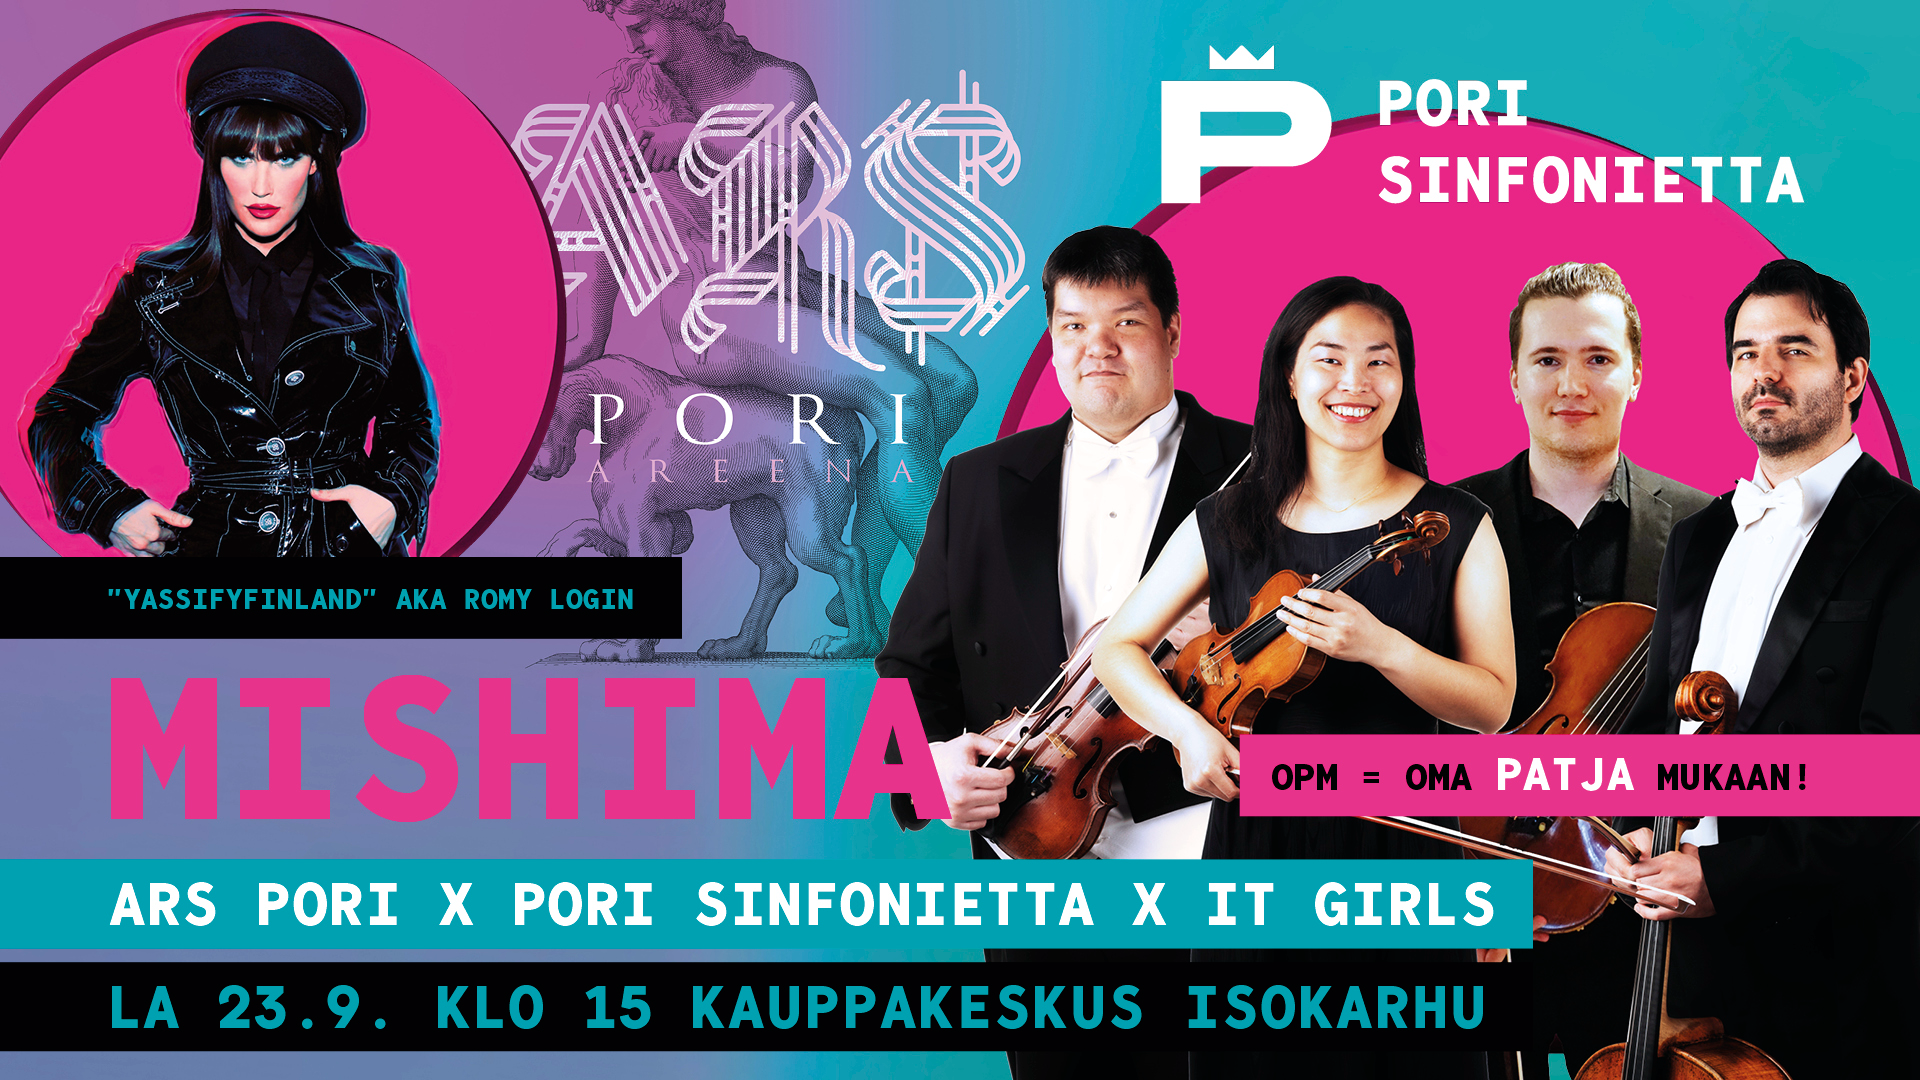 Ars Pori x Pori Sinfonietta x It Girls: Mishima